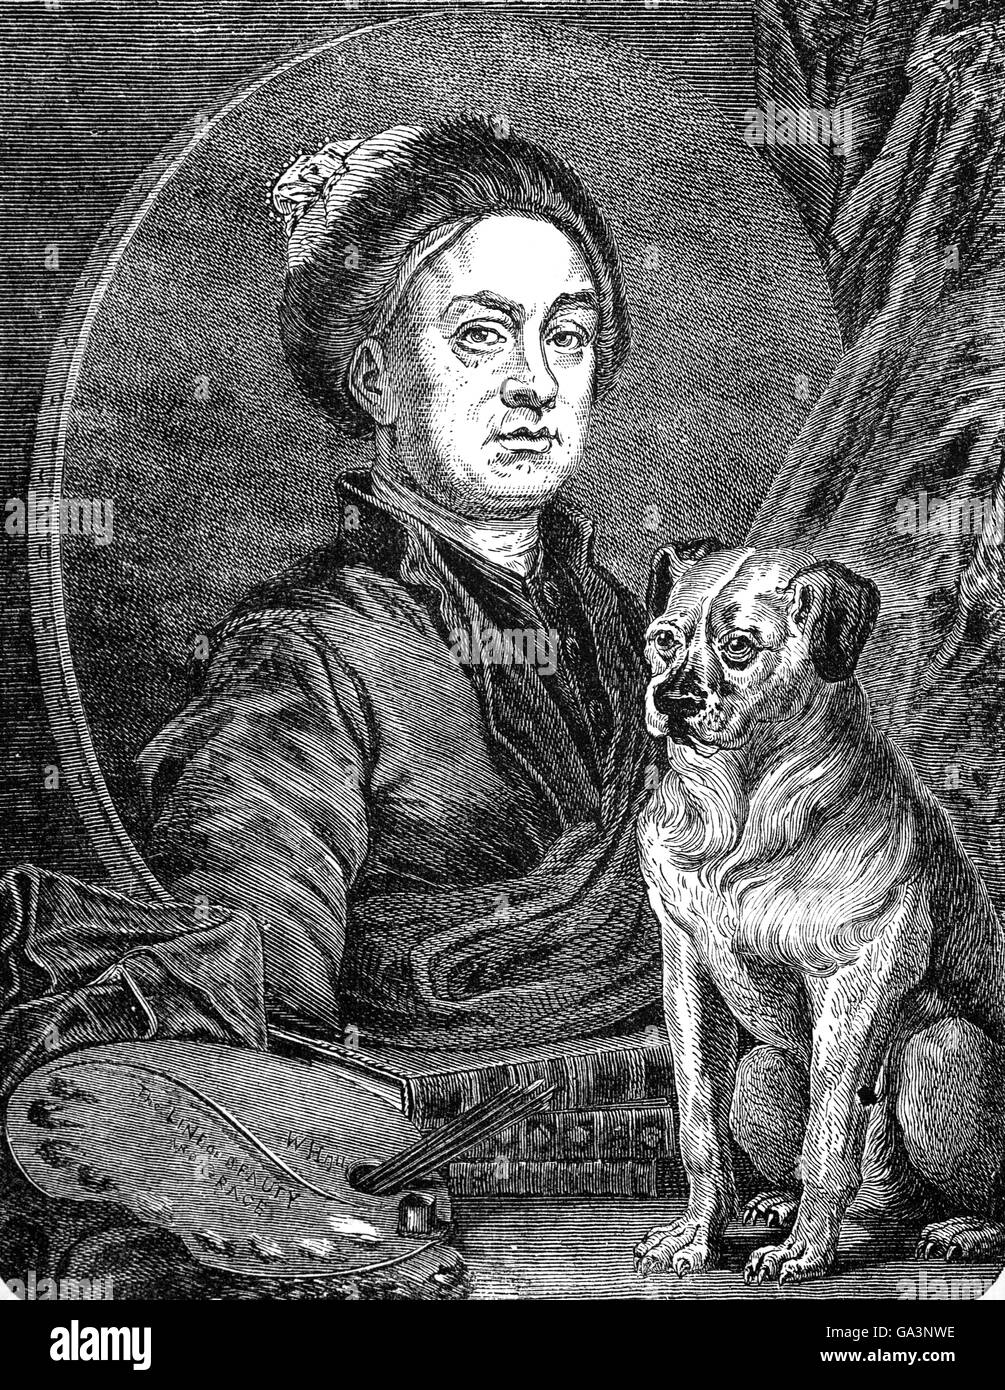 William Hogarth MBE (1697 – 1764) war ein englischer Maler, Grafiker, bildhafte Satiriker, Gesellschaftskritiker und Karikaturist. Seine Arbeit reichte von realistischen Porträts, Comic-Strip-artigen Bilderserie "moderne moralische Subjekte" genannt. Wissen seiner Arbeit ist so allgegenwärtig, dass satirische politischen Abbildungen in diesem Stil oft als "Hogarthian bezeichnet sind" Stockfoto